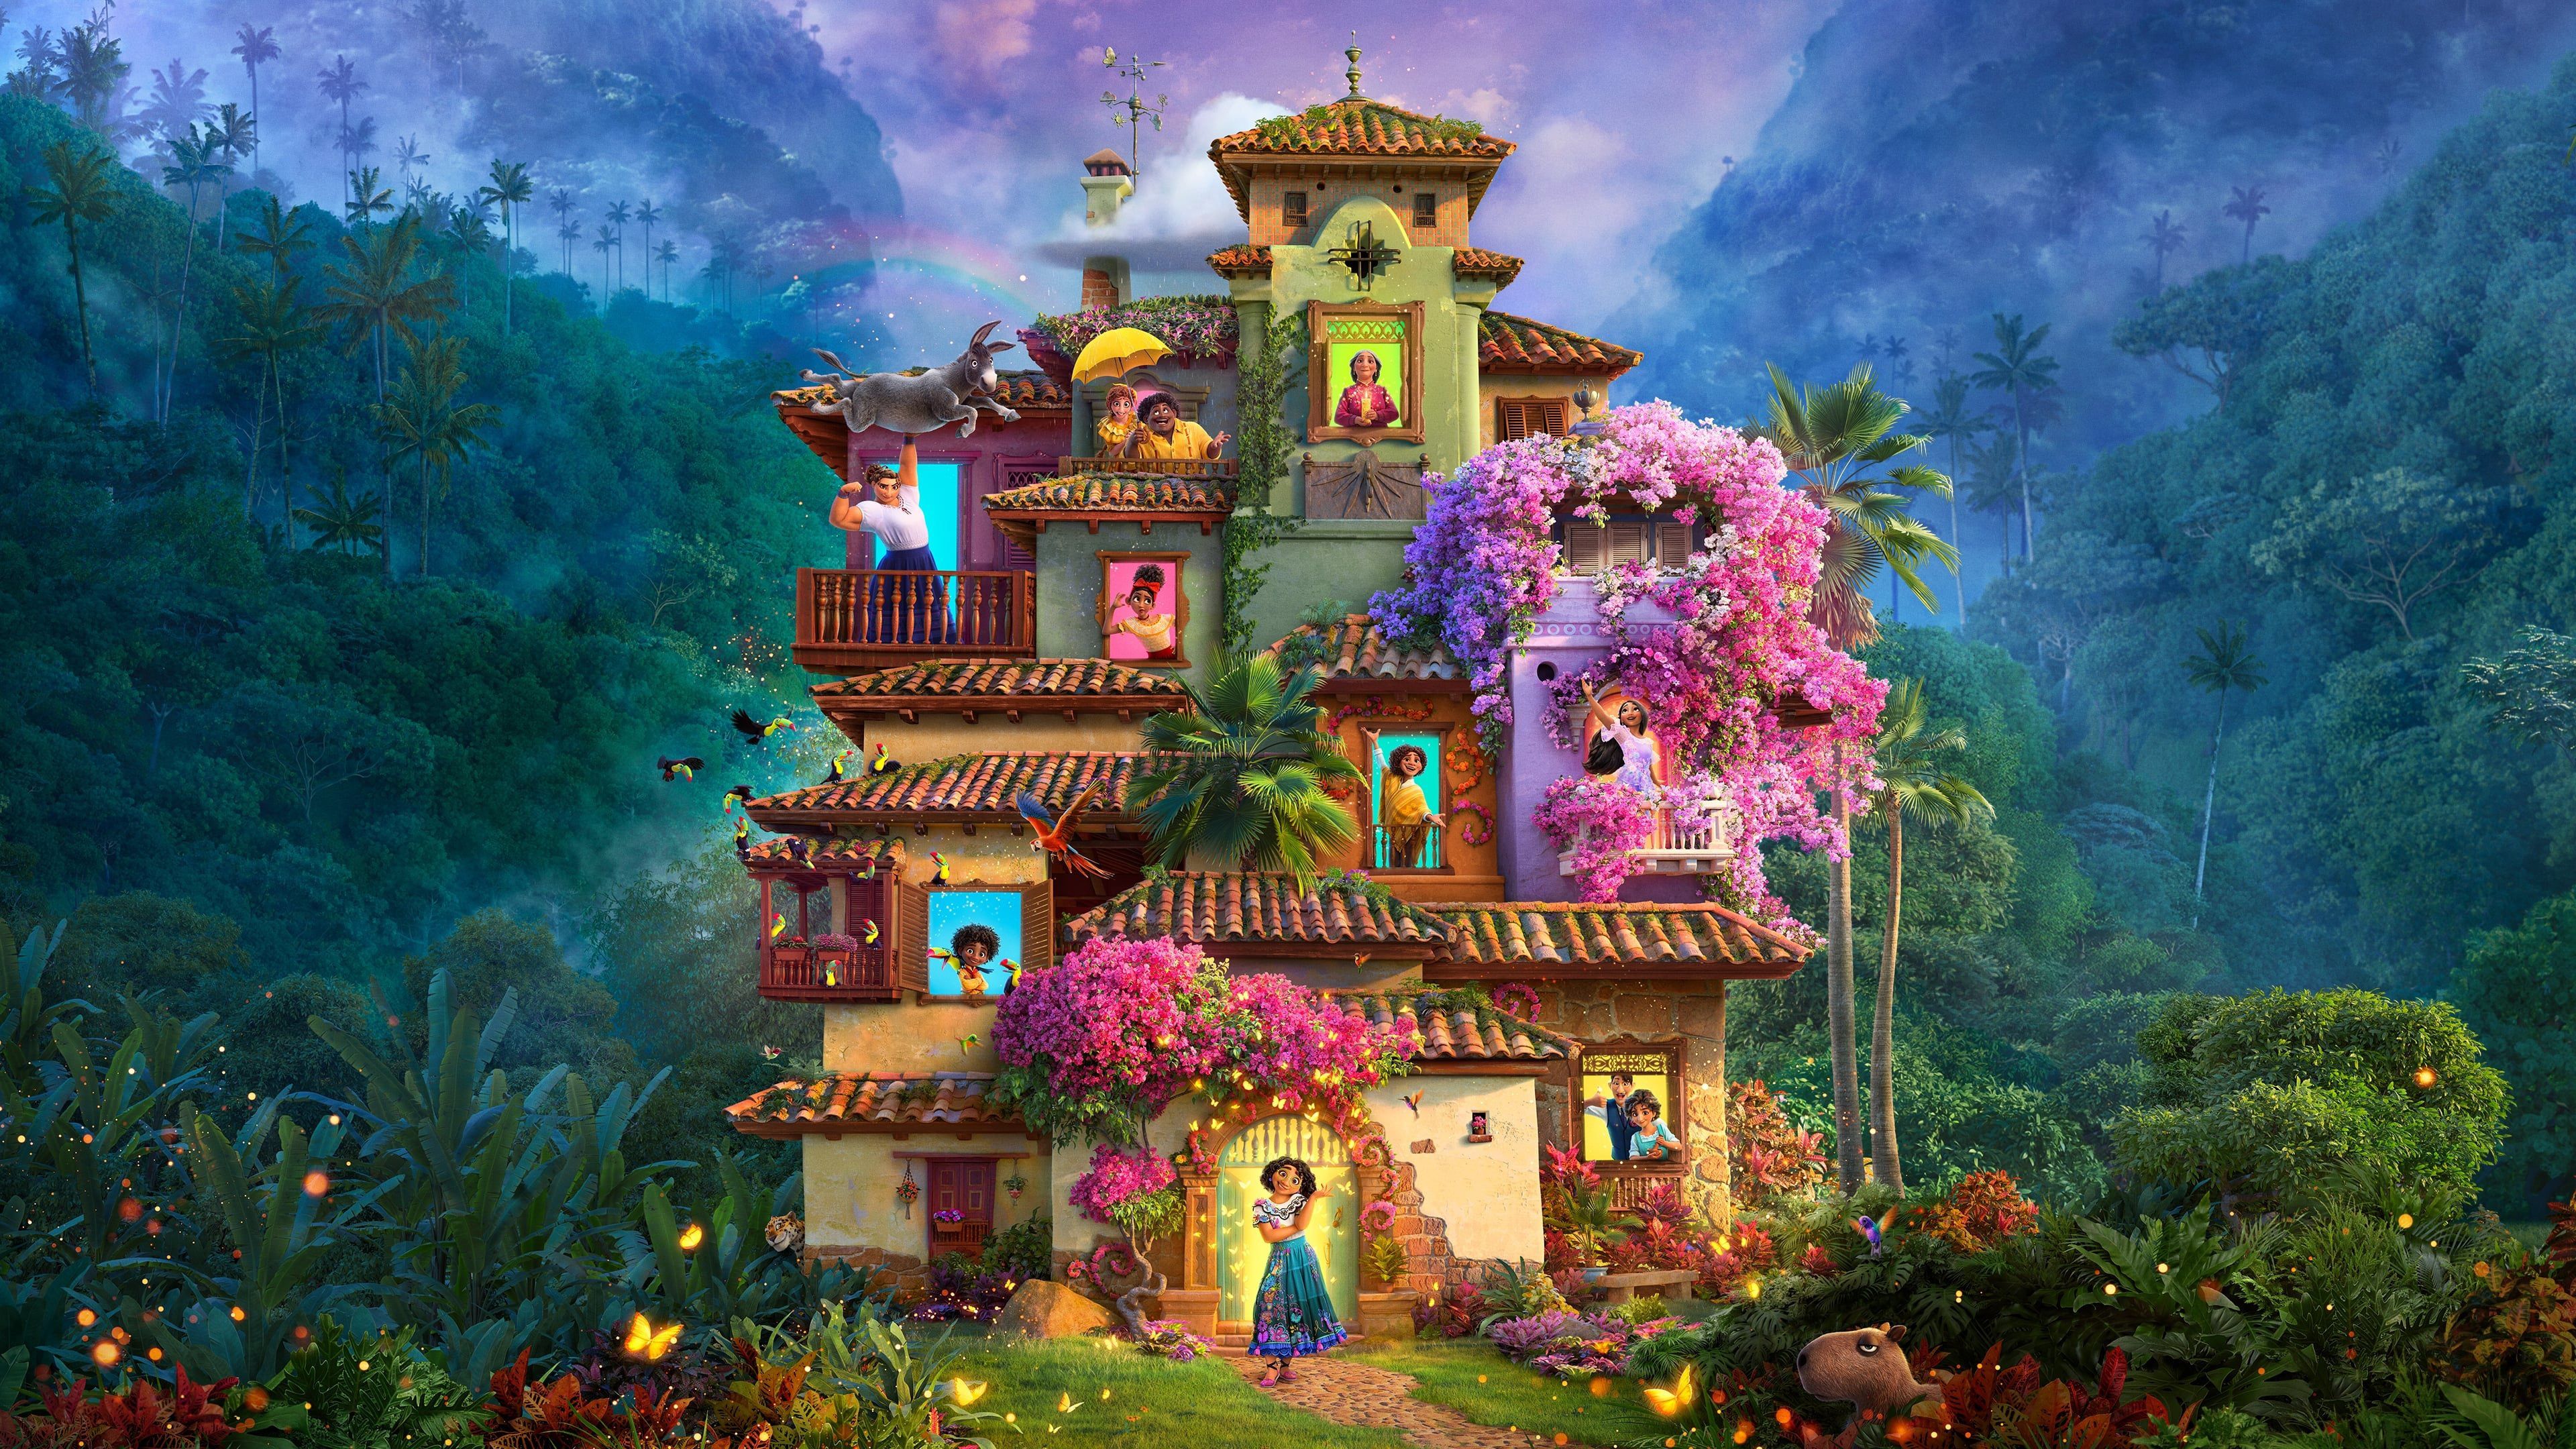 Gana un viaje a Colombia con Koblenz y la nueva película Encanto de Disney